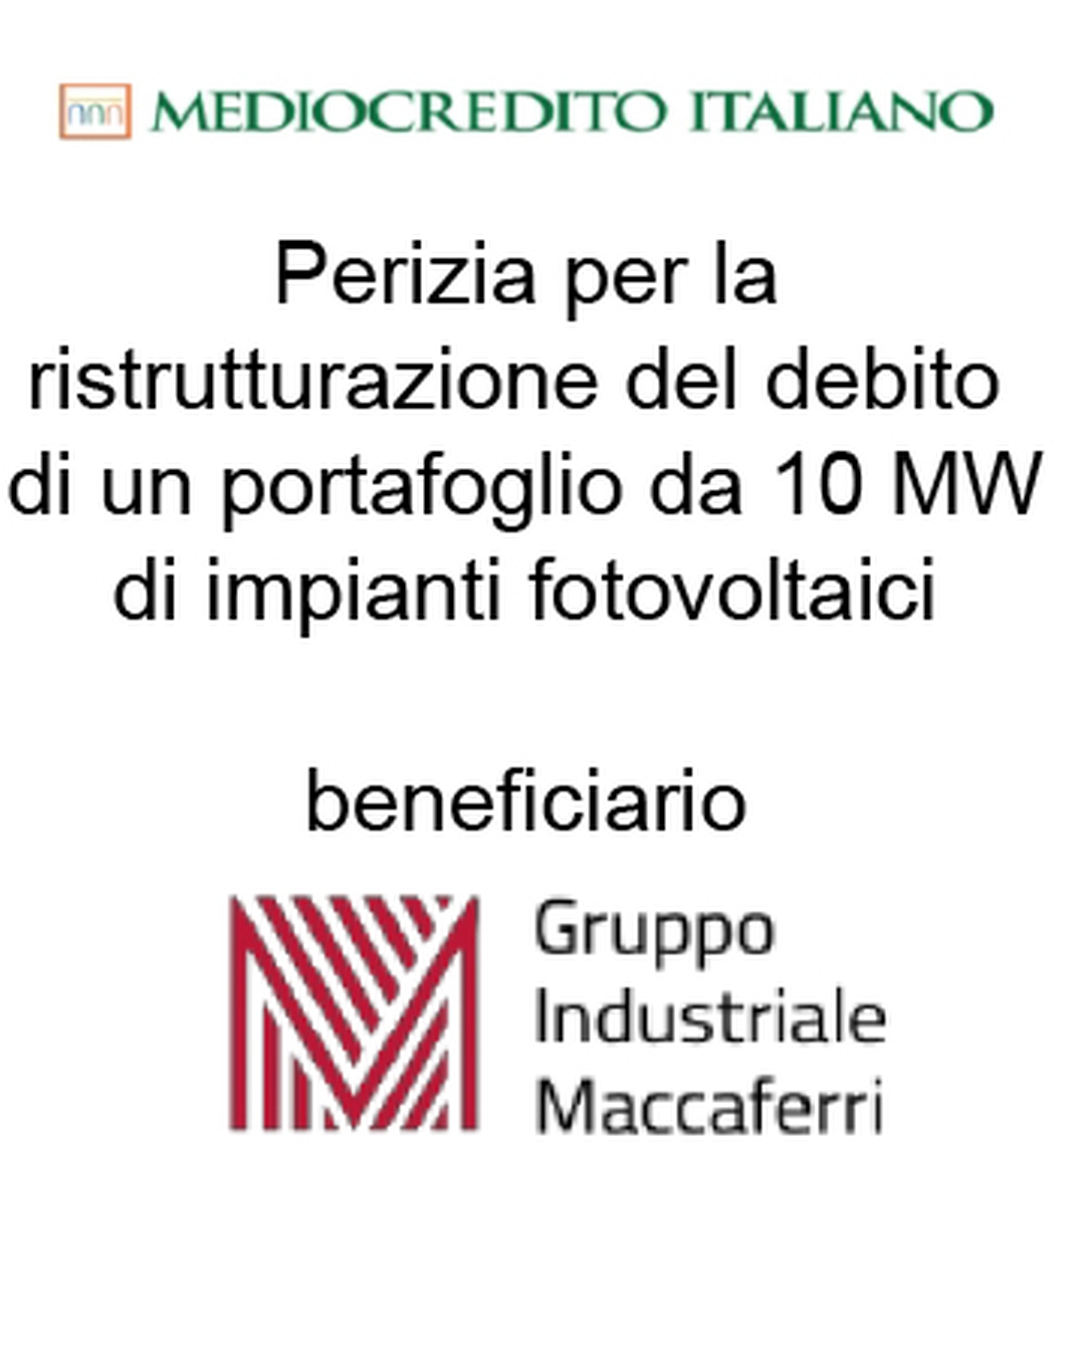 Consulente di Mediocredito Italiano (Gruppo Intesa Sanpaolo) nella ristrutturazione del debito finanziario per 10 serre fotovoltaiche per una capacità complessiva di 10 MW per il Gruppo Industriale Maccaferri (beneficiario). Ha agito in qualità di consulente della Banca. Incarico completato nel 2015.